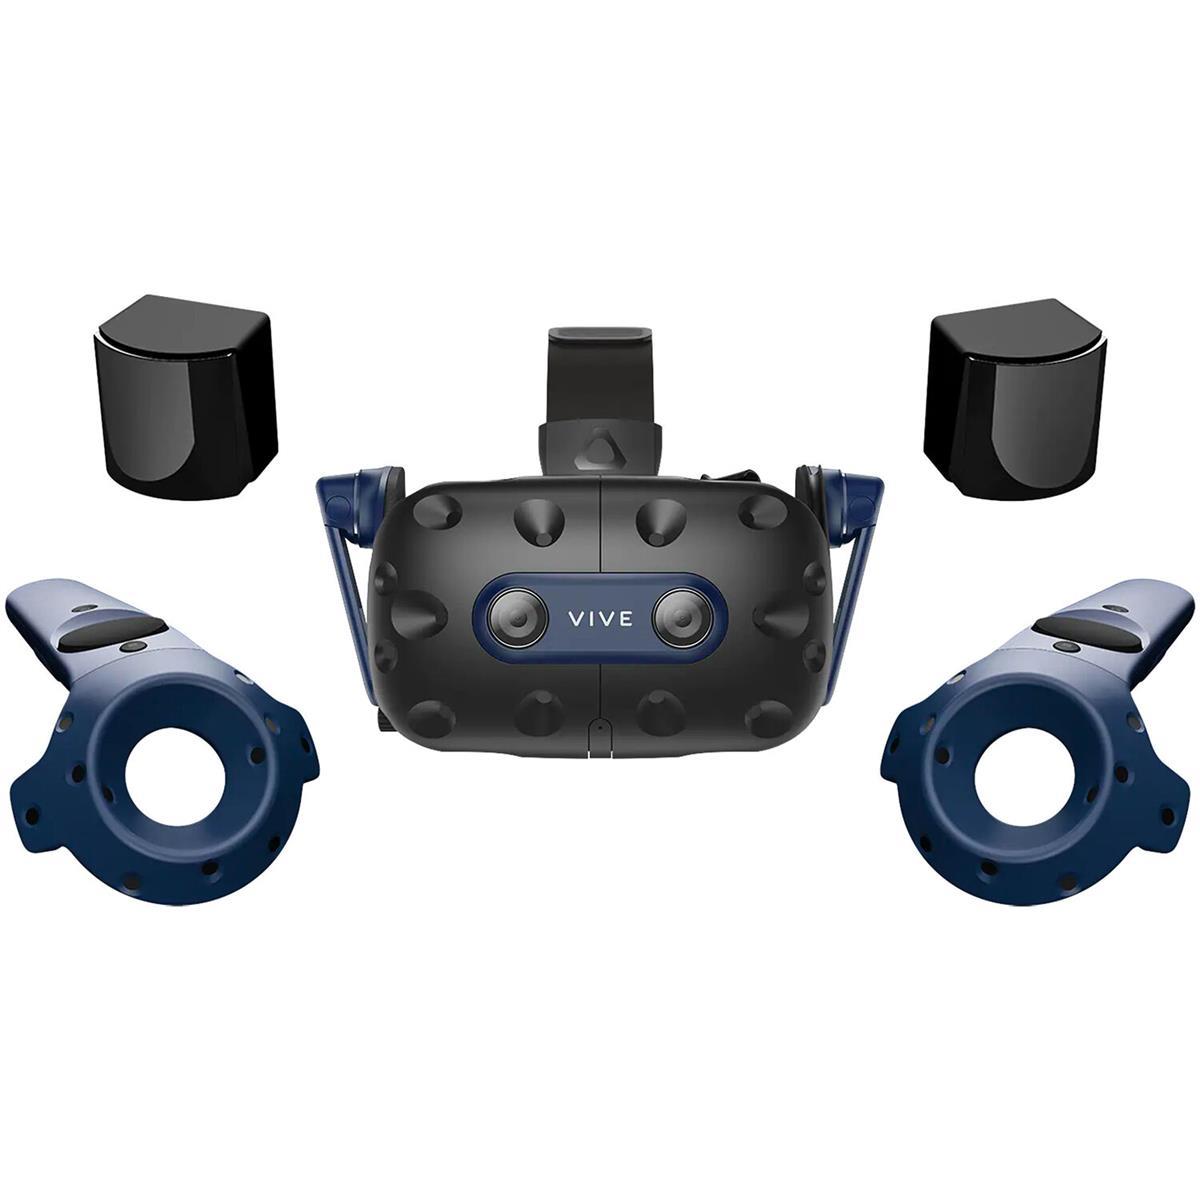 Image of HTC VIVE Pro 2 VR Headset Full Kit